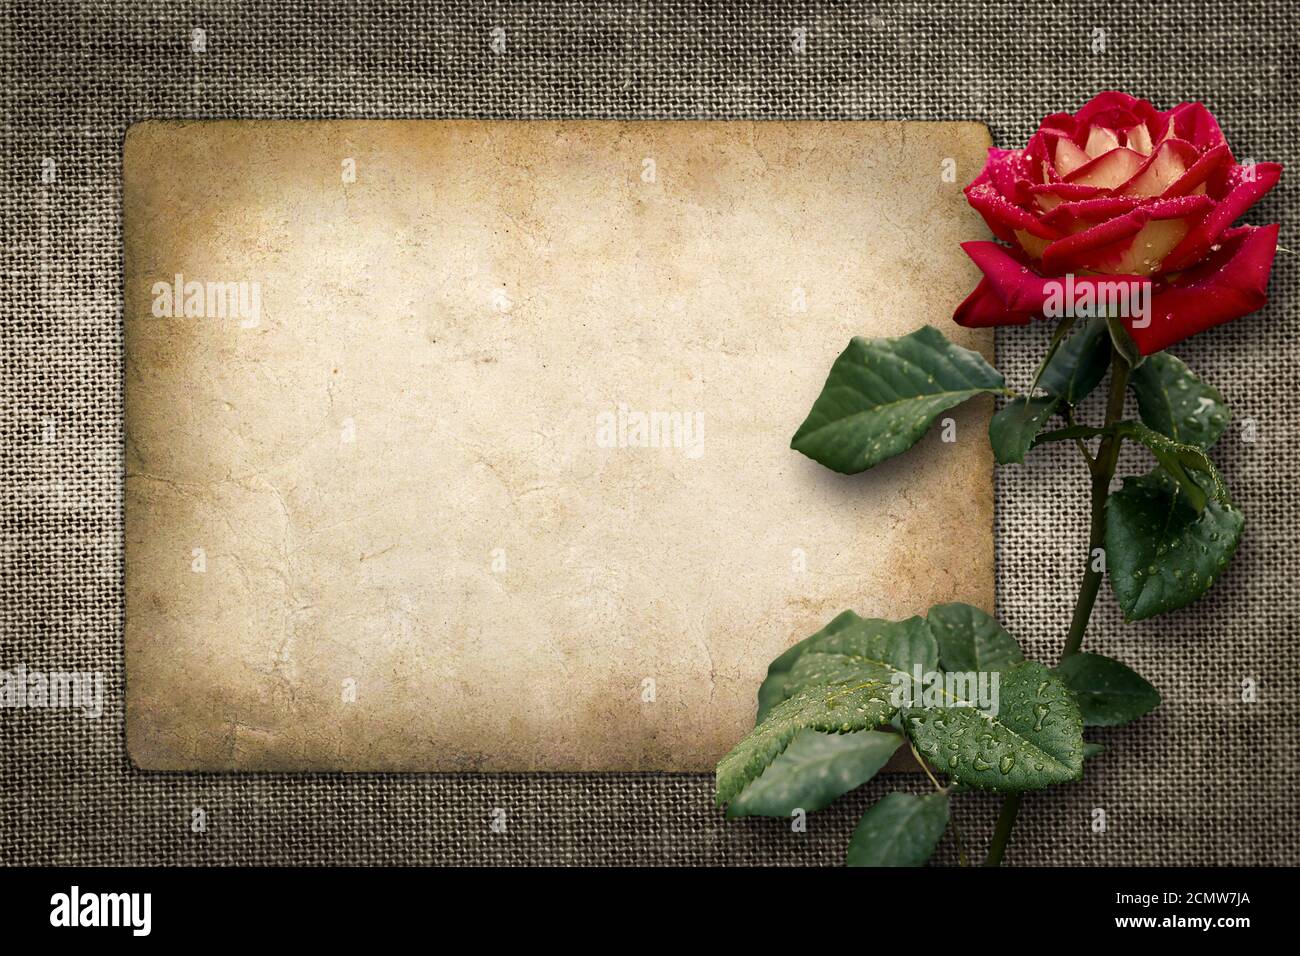 Tarjeta de felicitación o invitación con rosa roja en estilo vintage Foto de stock